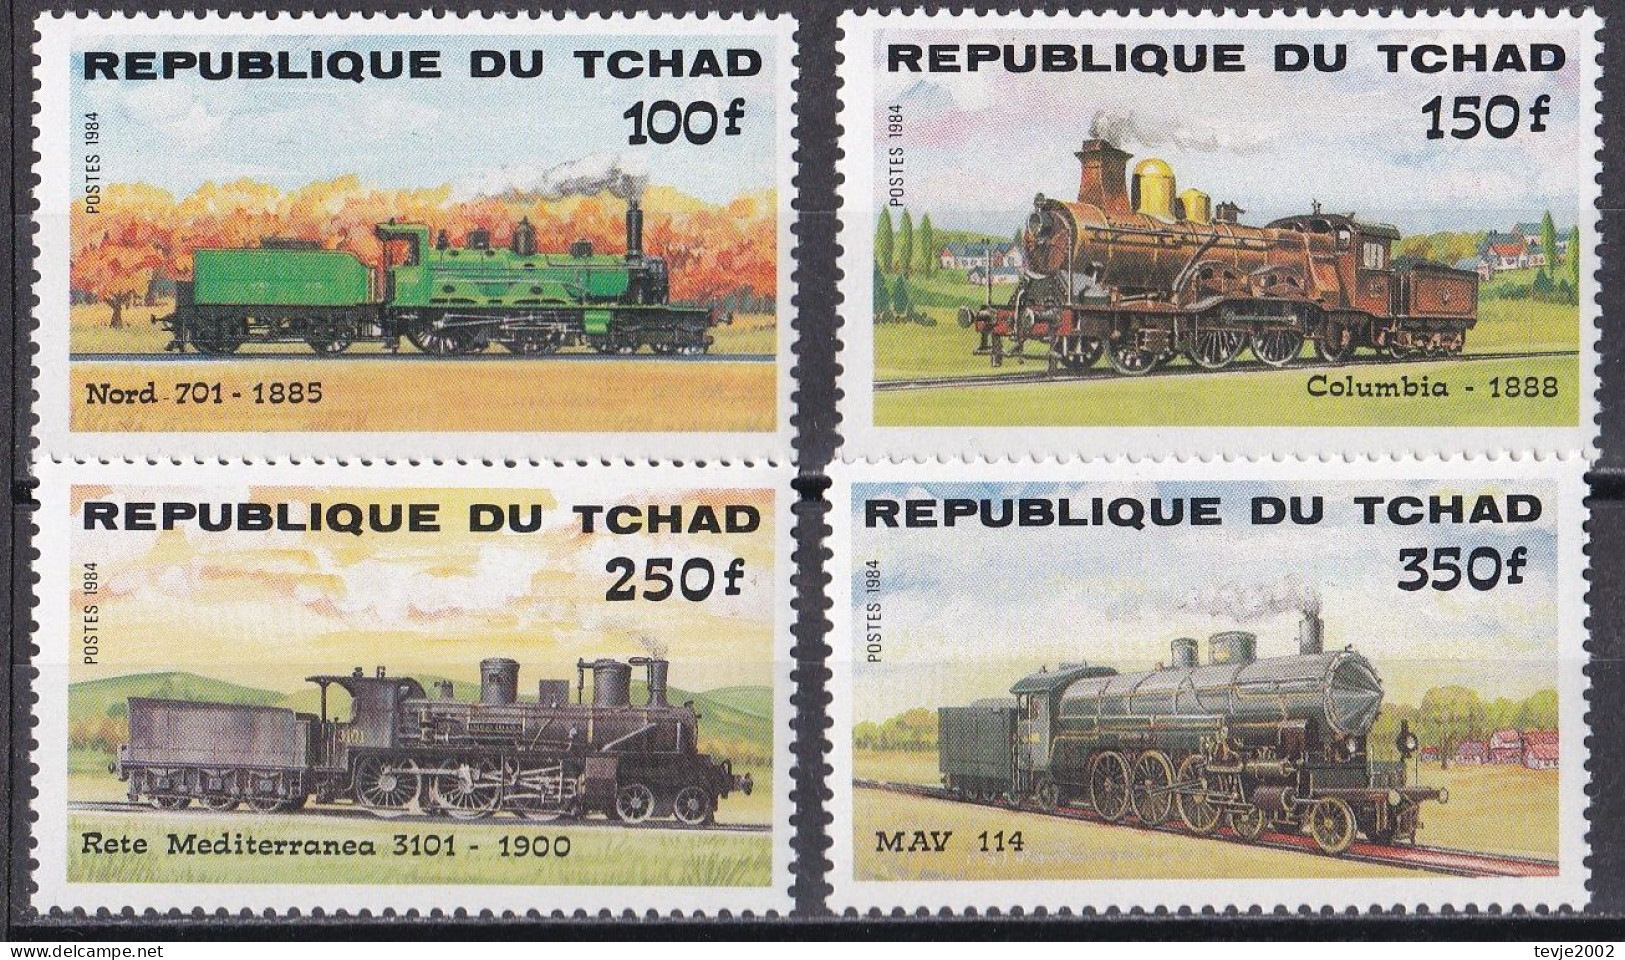 Tschad Tchad 1984 - Mi.Nr. 1074 - 1077 - Postfrisch MNH - Eisenbahnen Railways - Trains